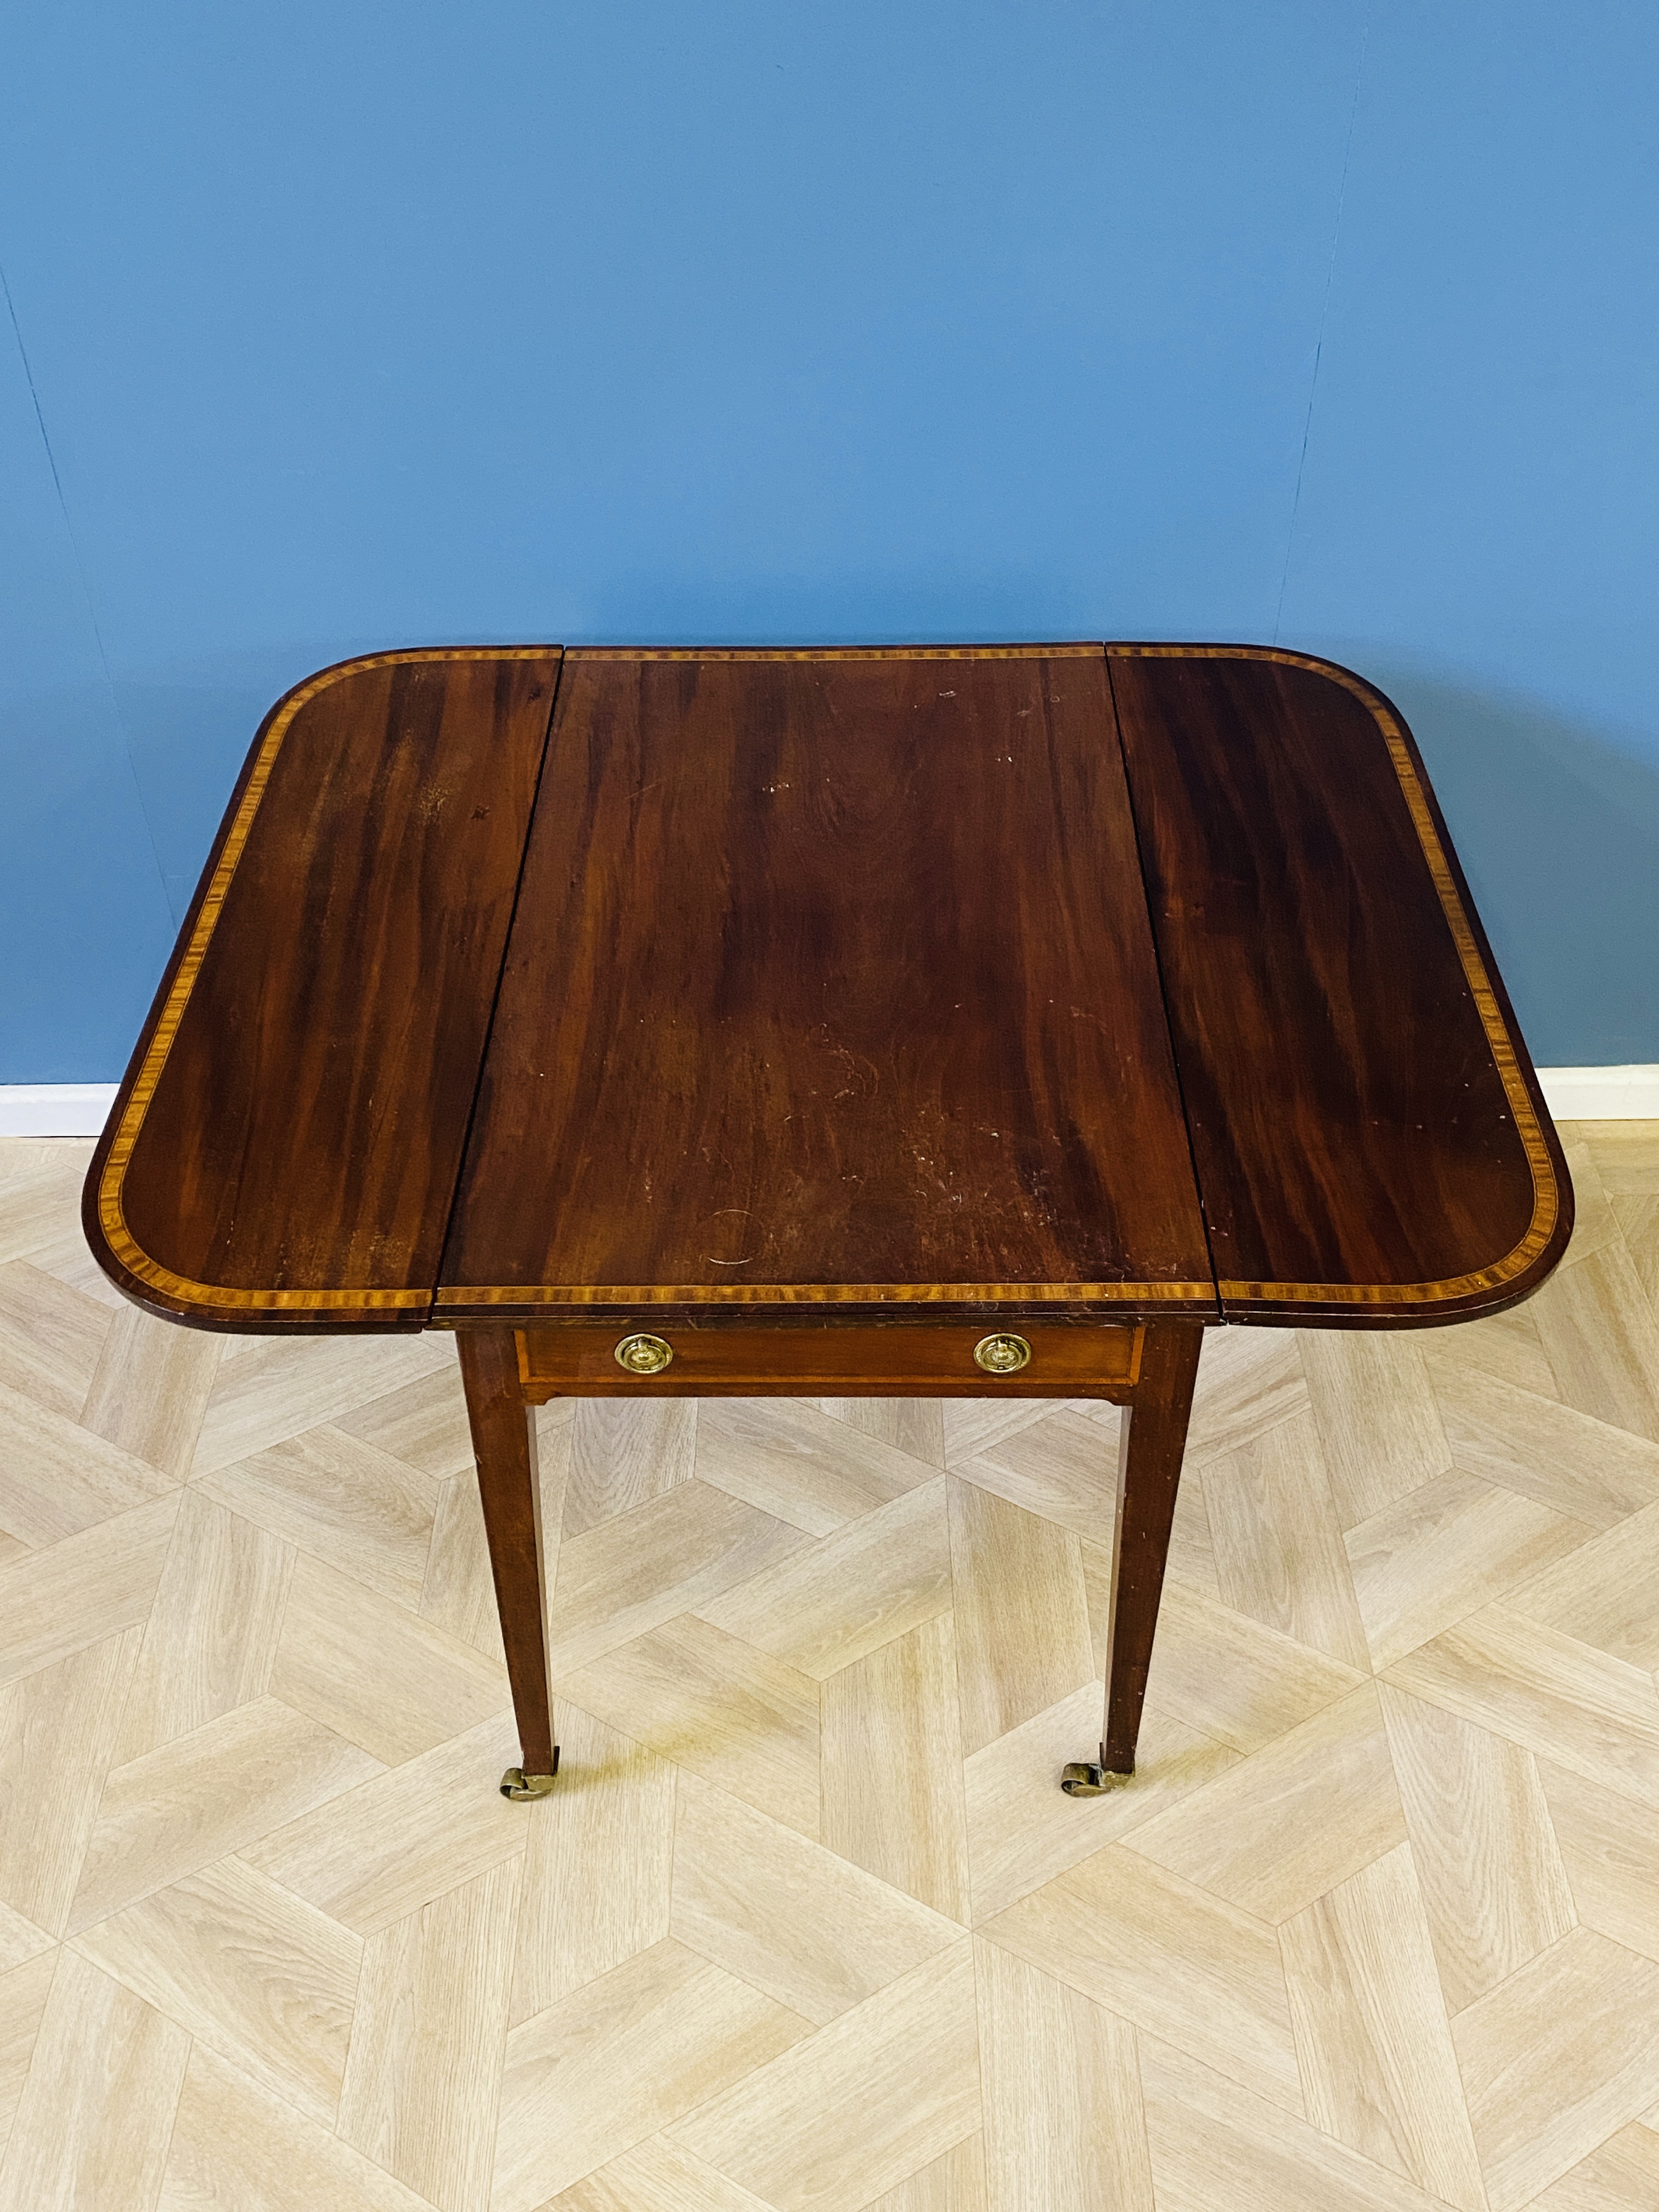 19th century mahogany Pembroke table - Image 2 of 11